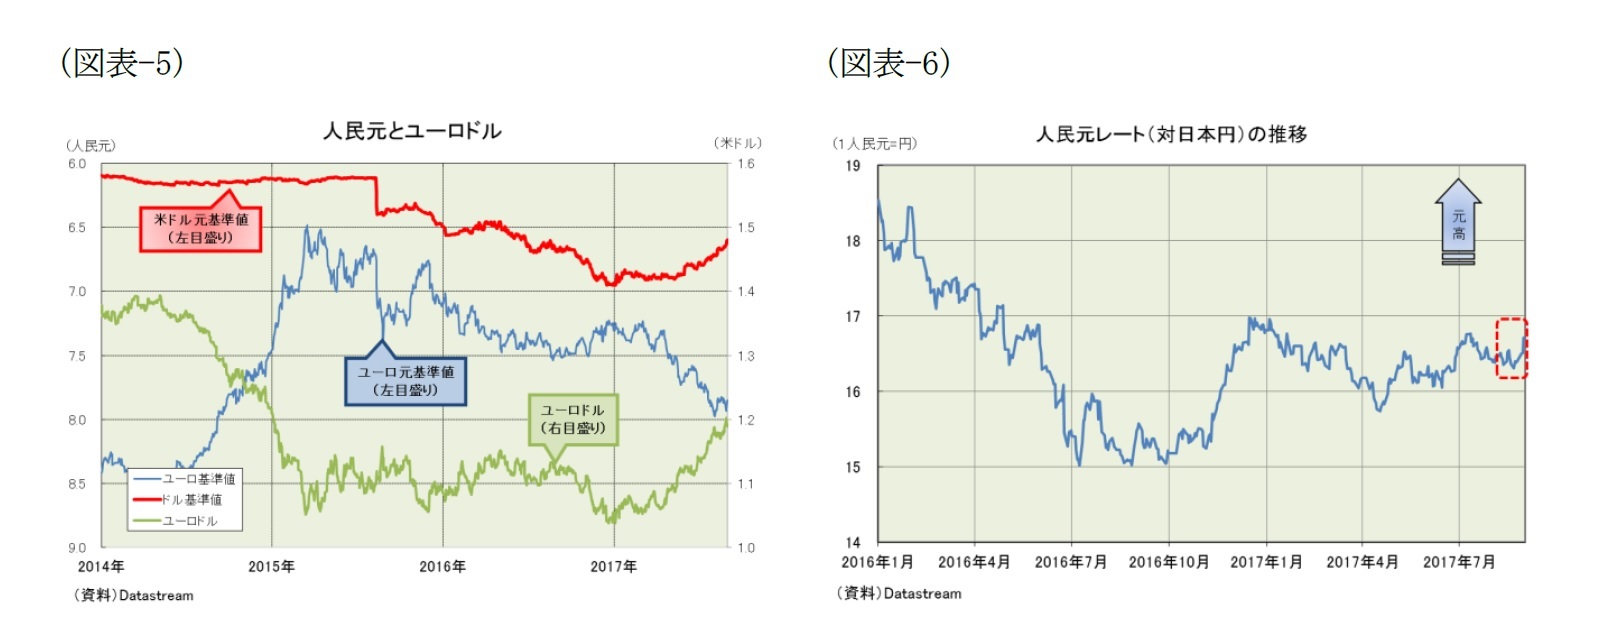 （図表-5）人民元とユーロドル/（図表-6）人民元レート(対日本円）の推移